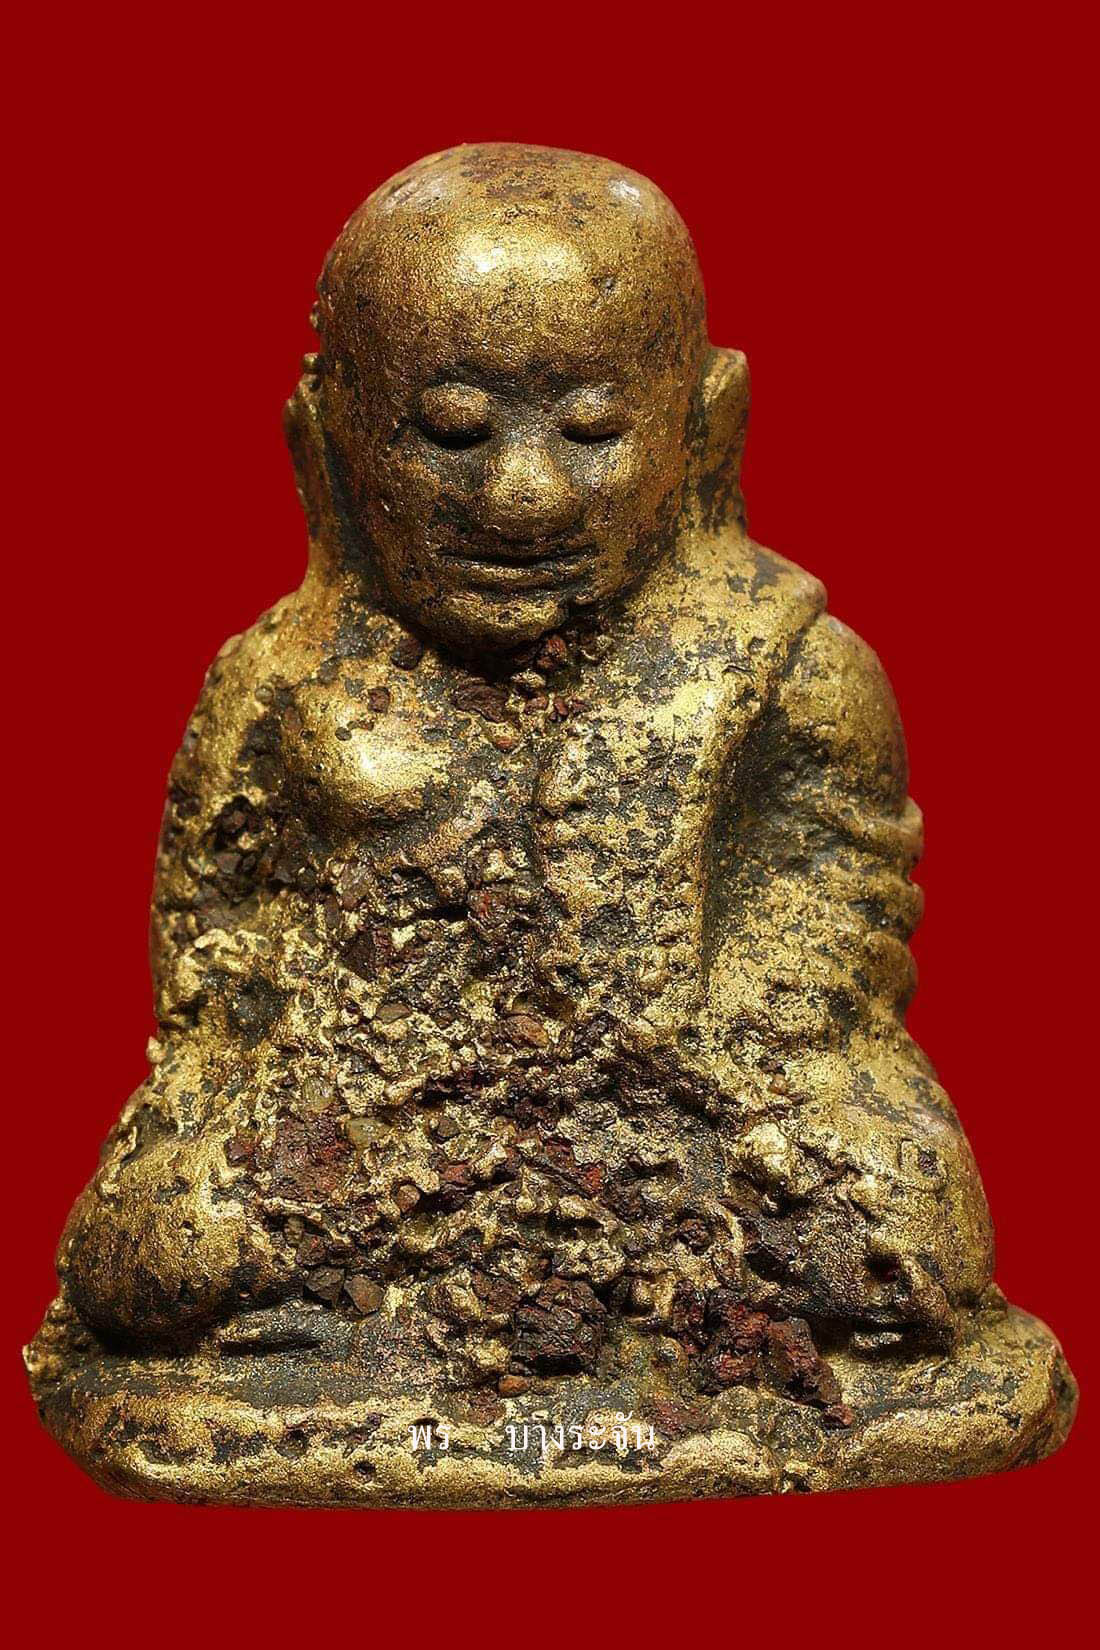 รูปหล่อหลวงพ่อเงินบางคลาน พิมพ์นิยมแบบมีแร่เห็นพระธาตุ -  เมล็ดทราย phra lp ngern statue wat bangklan antique talisman old thai buddha amulet 銮菩银 财佛, 鑾菩銀 大師